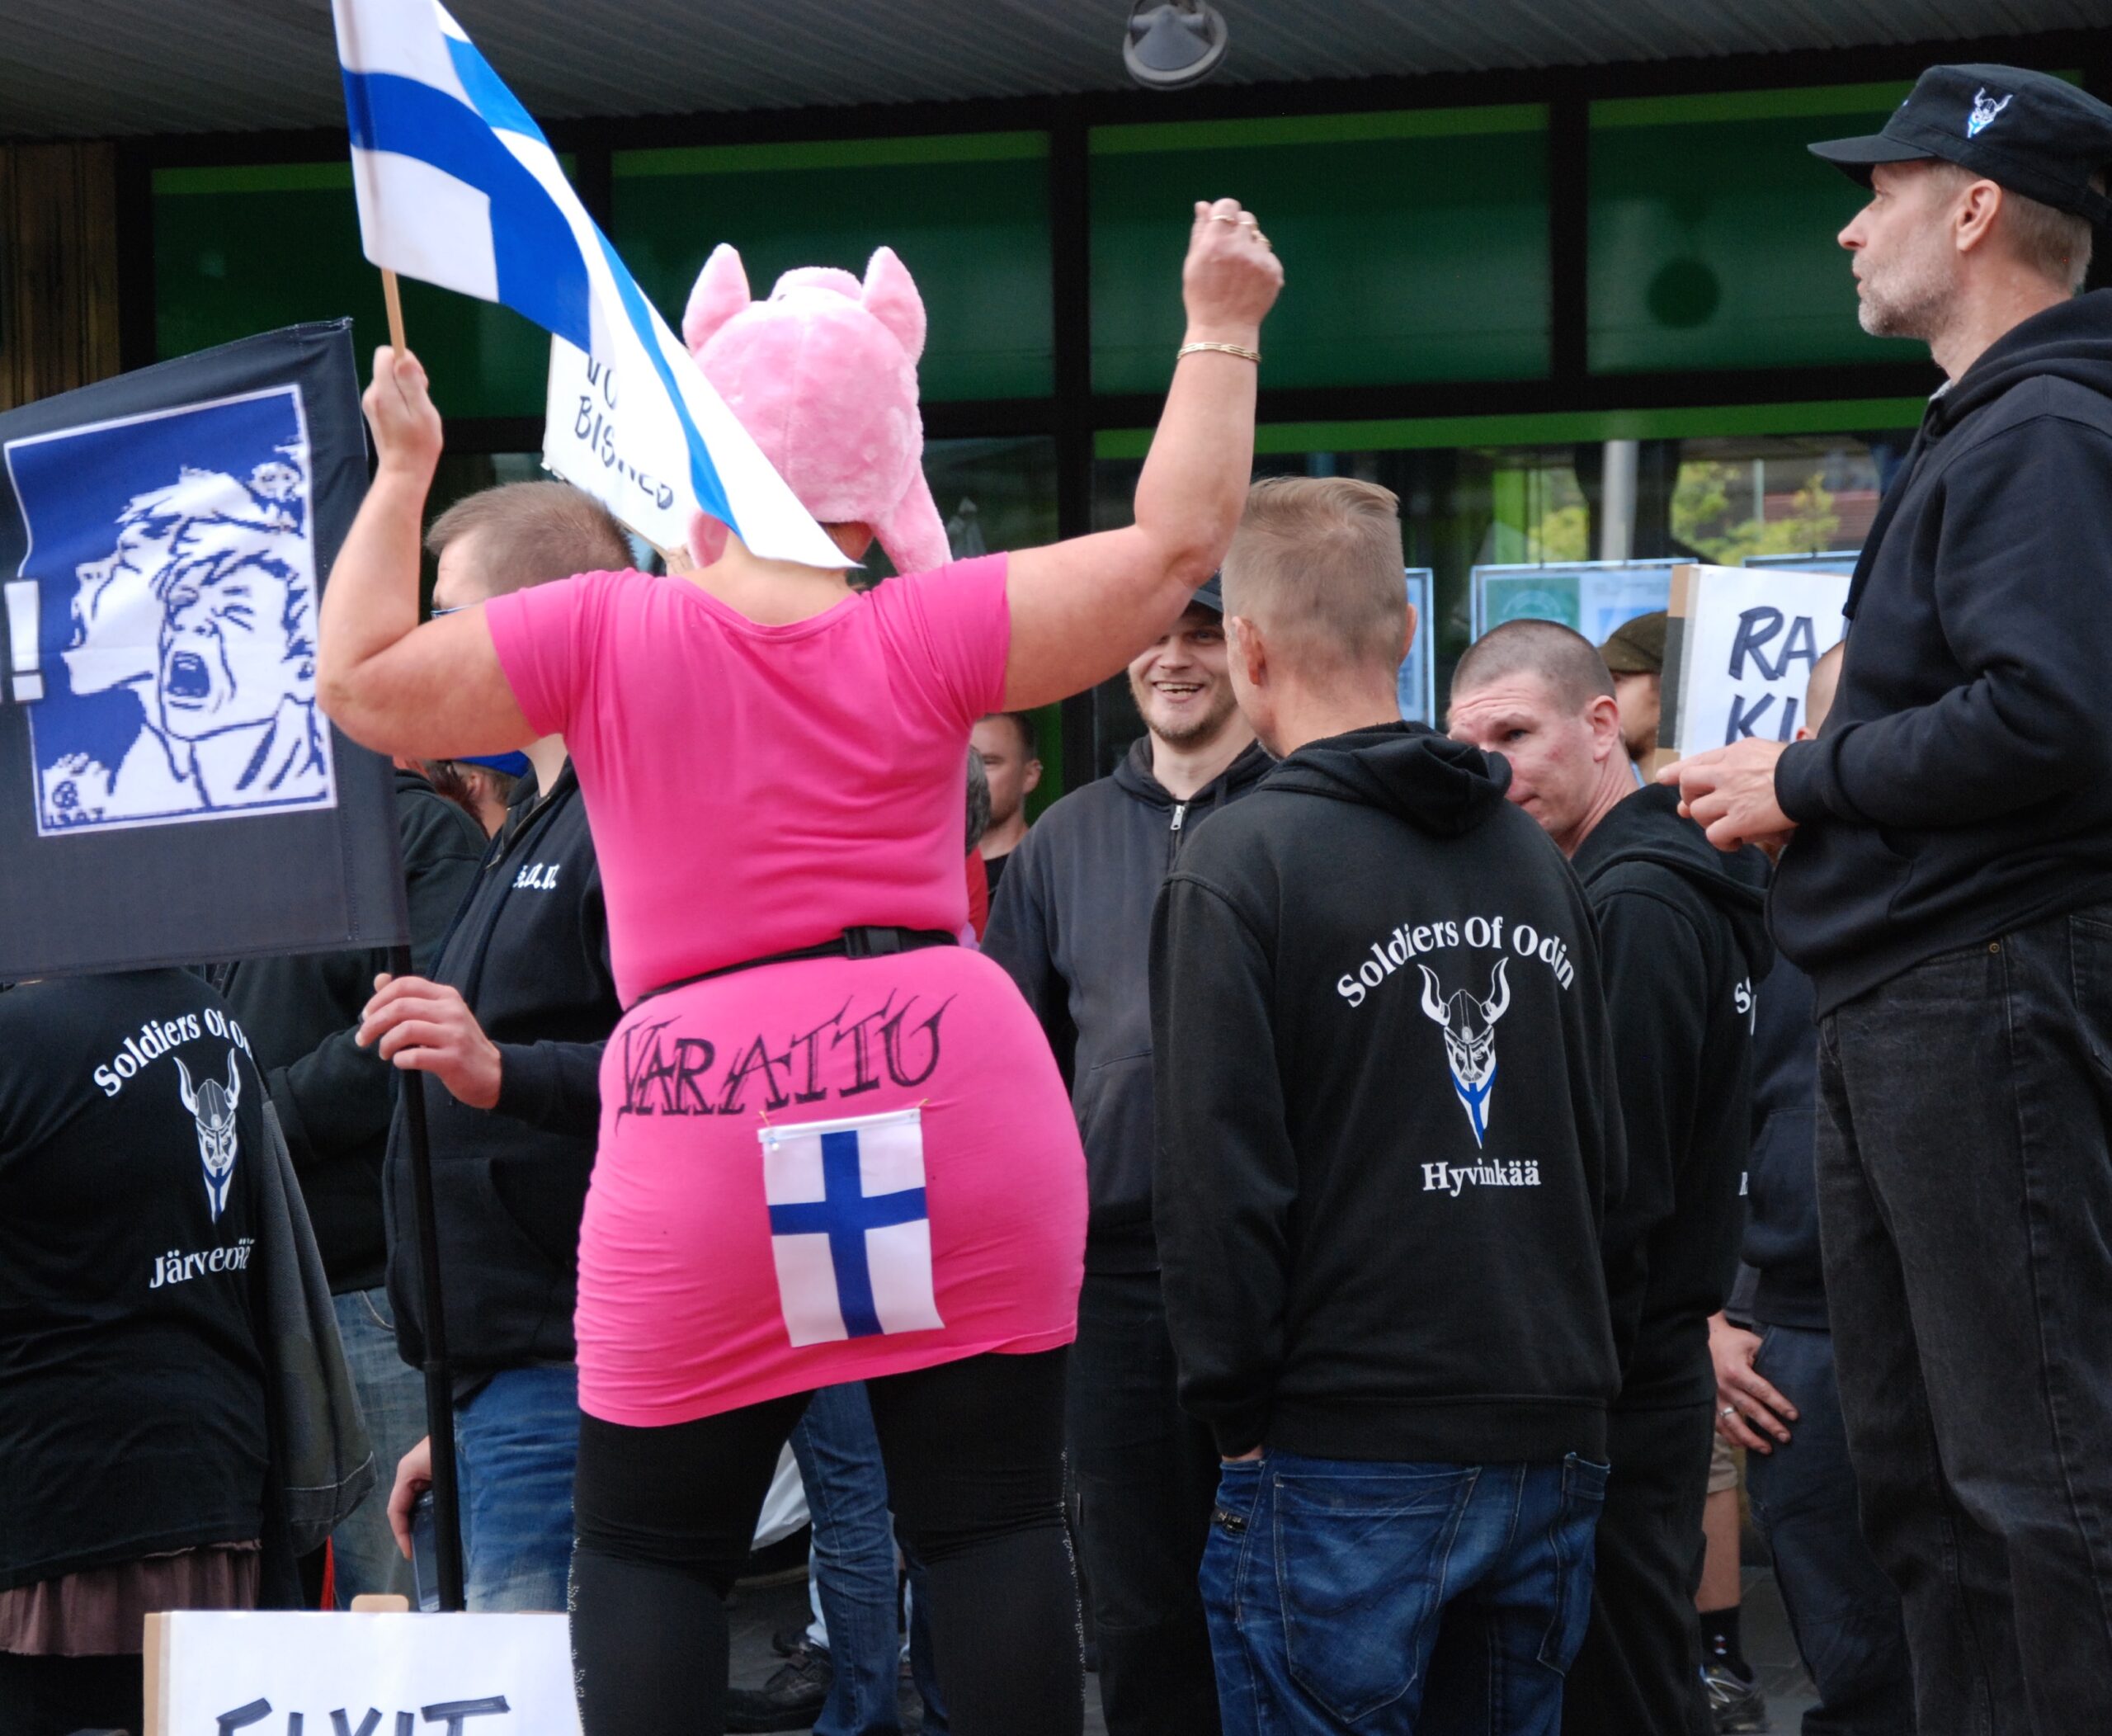 Olen hämmentynyt siitä, että tämä mielenosoittaja on päättänyt pyyhkiä perseensä Suomen lippuun.